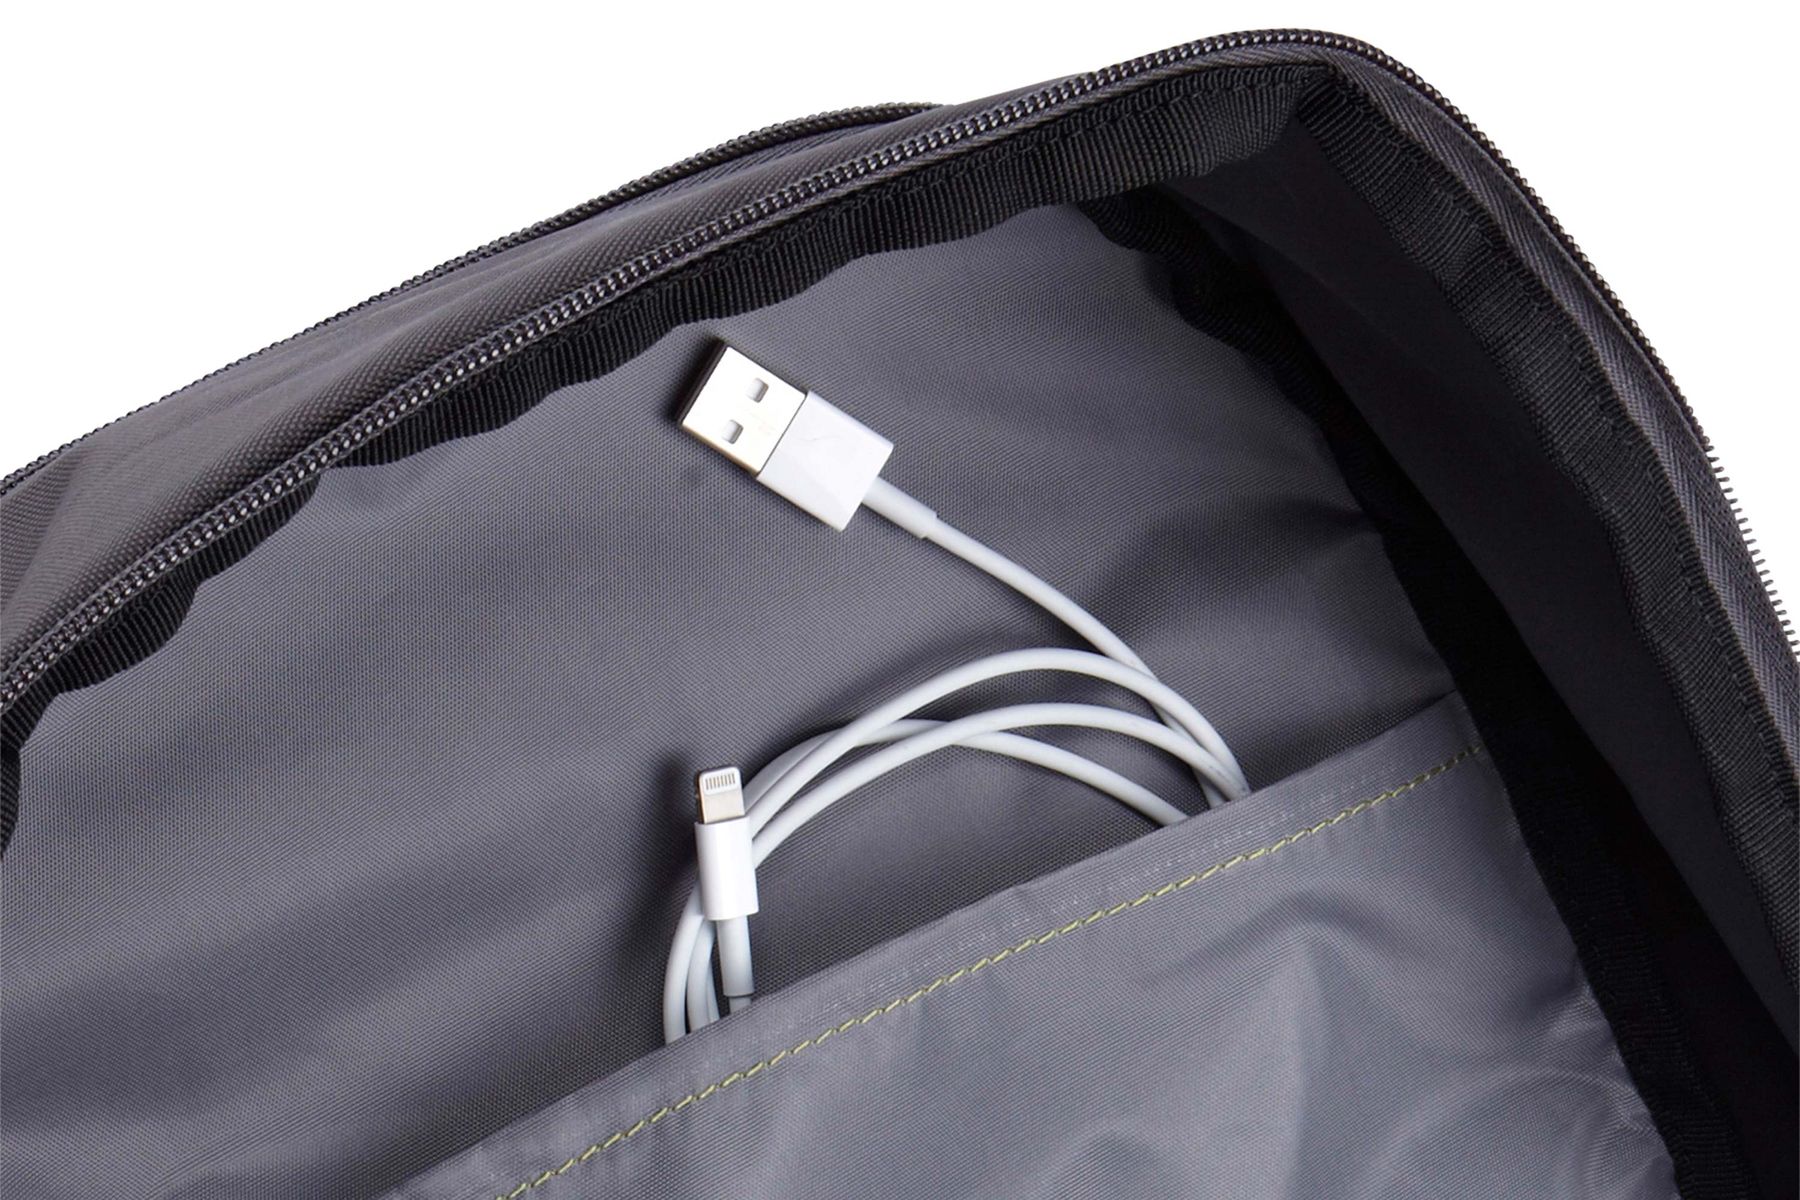 Case Logic Jaunt Backpack 15.6" laptop backpack